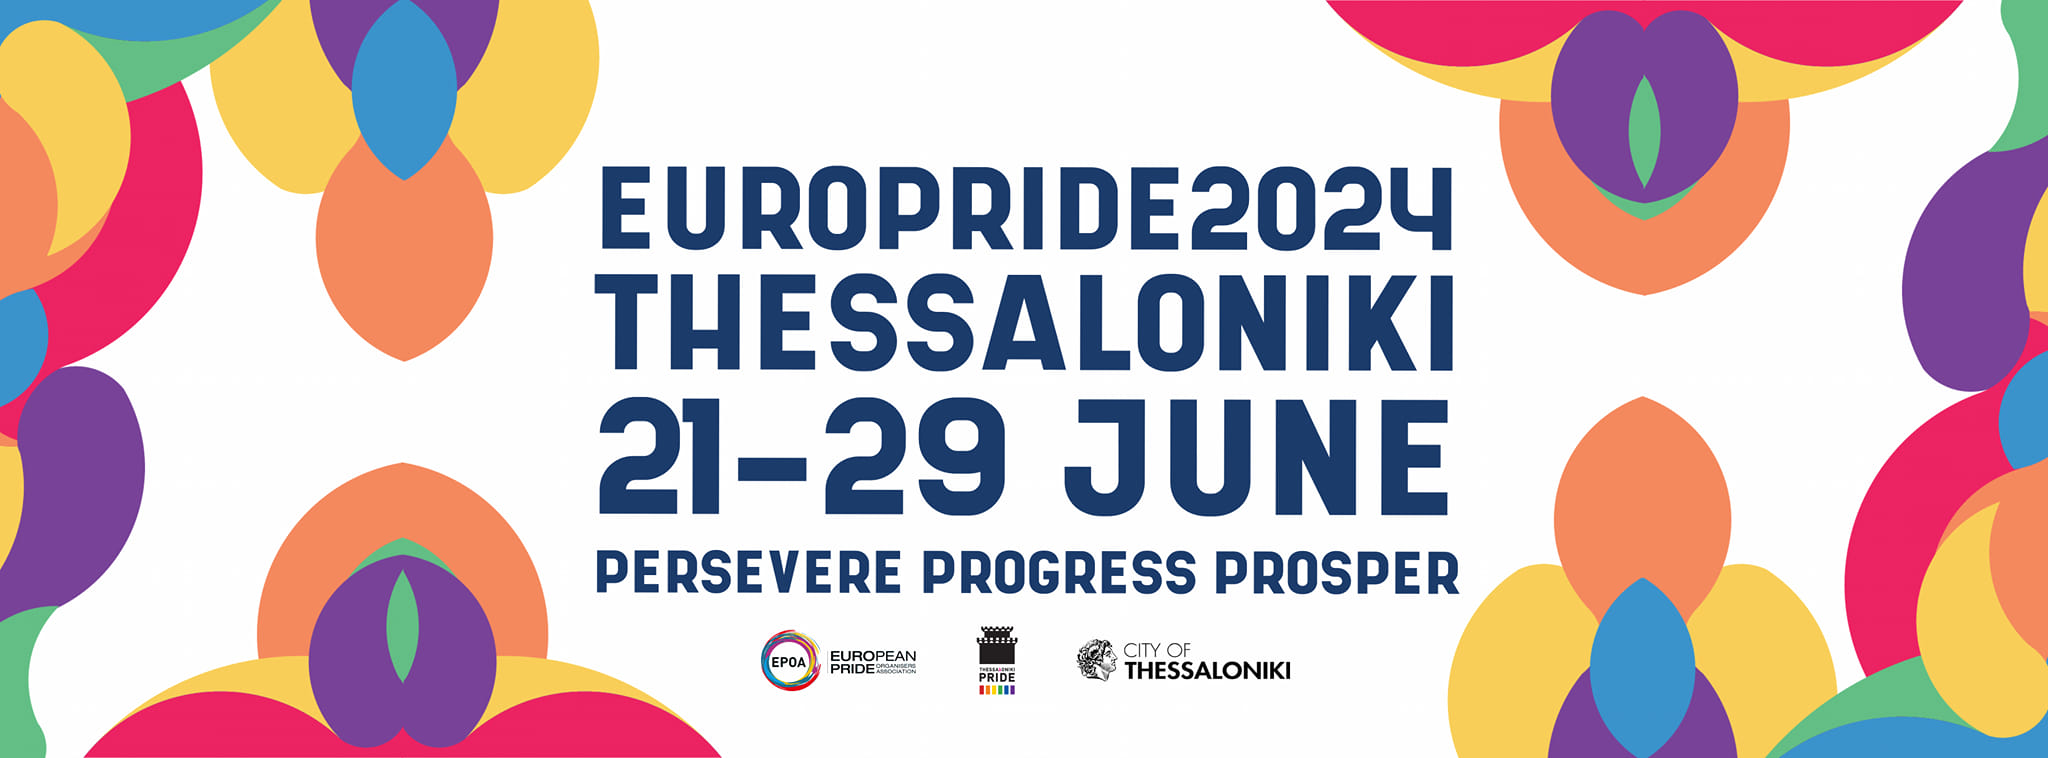 EUROPRIDE 2024 THESSALONIKI